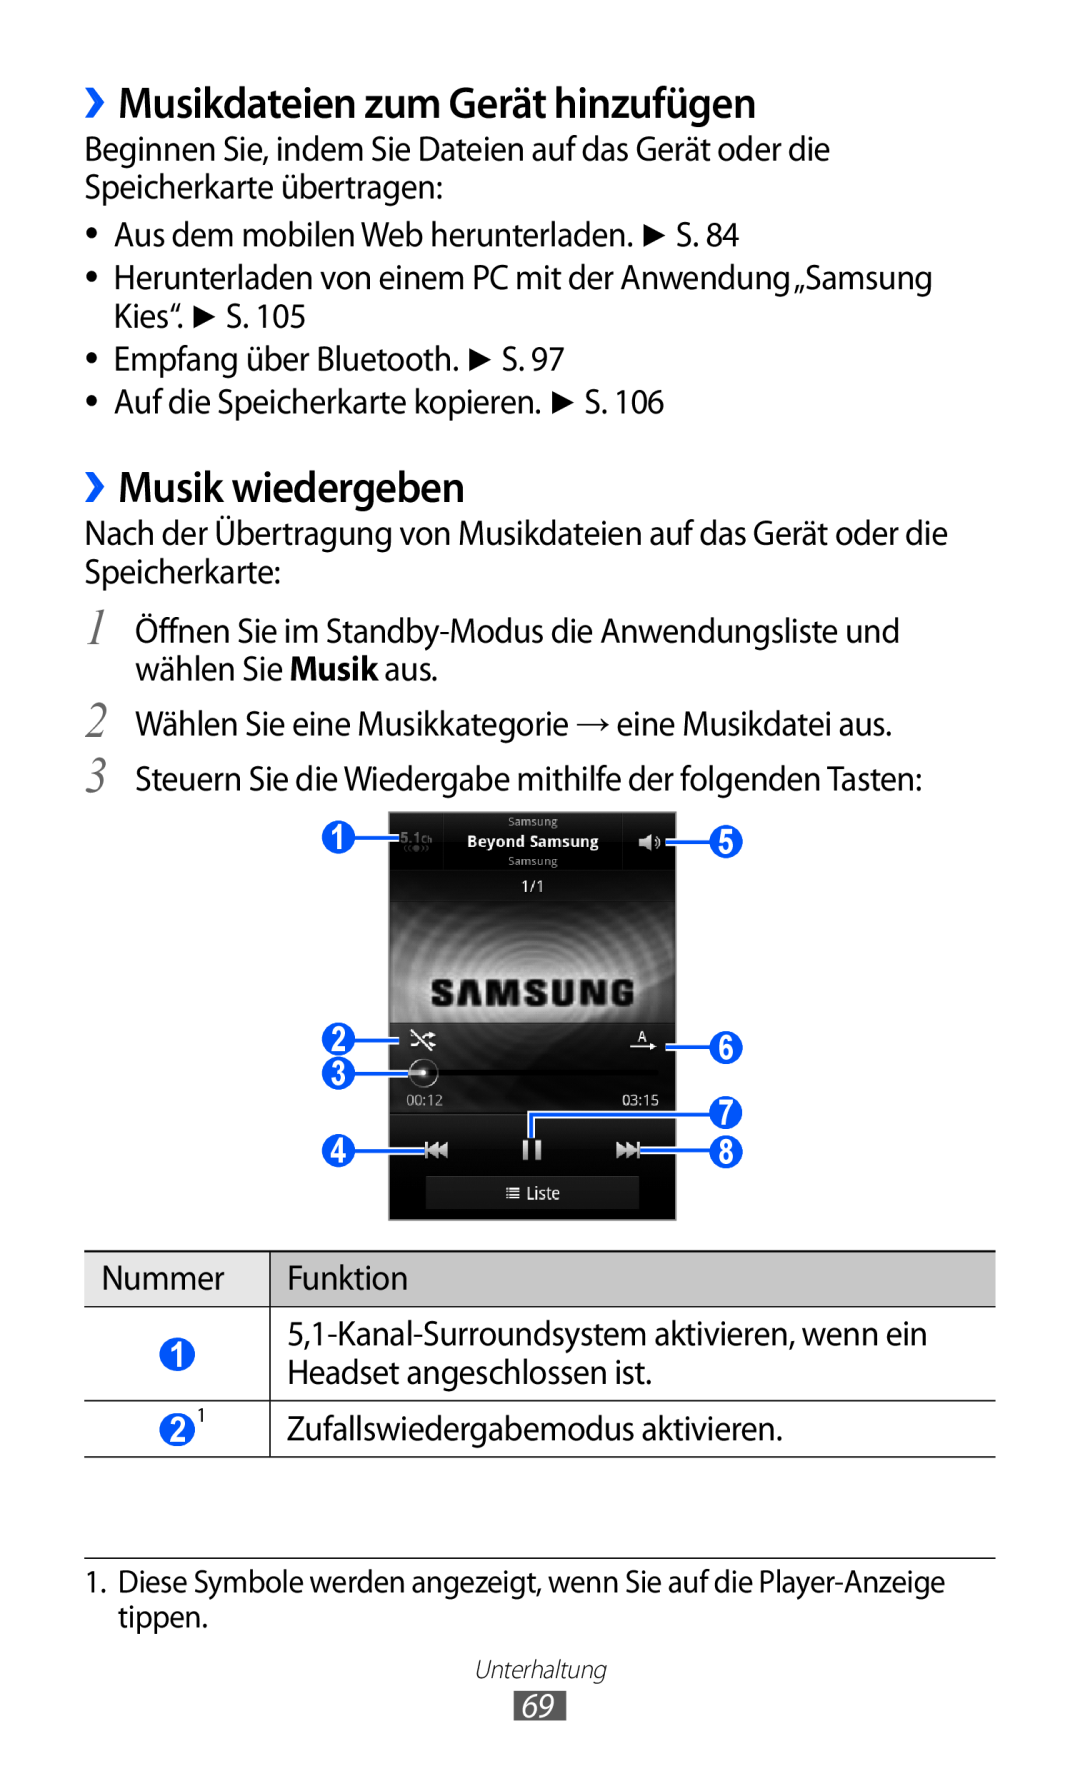 Samsung GT-S6500HADDBT manual ››Musikdateien zum Gerät hinzufügen, ››Musik wiedergeben, Zufallswiedergabemodus aktivieren 